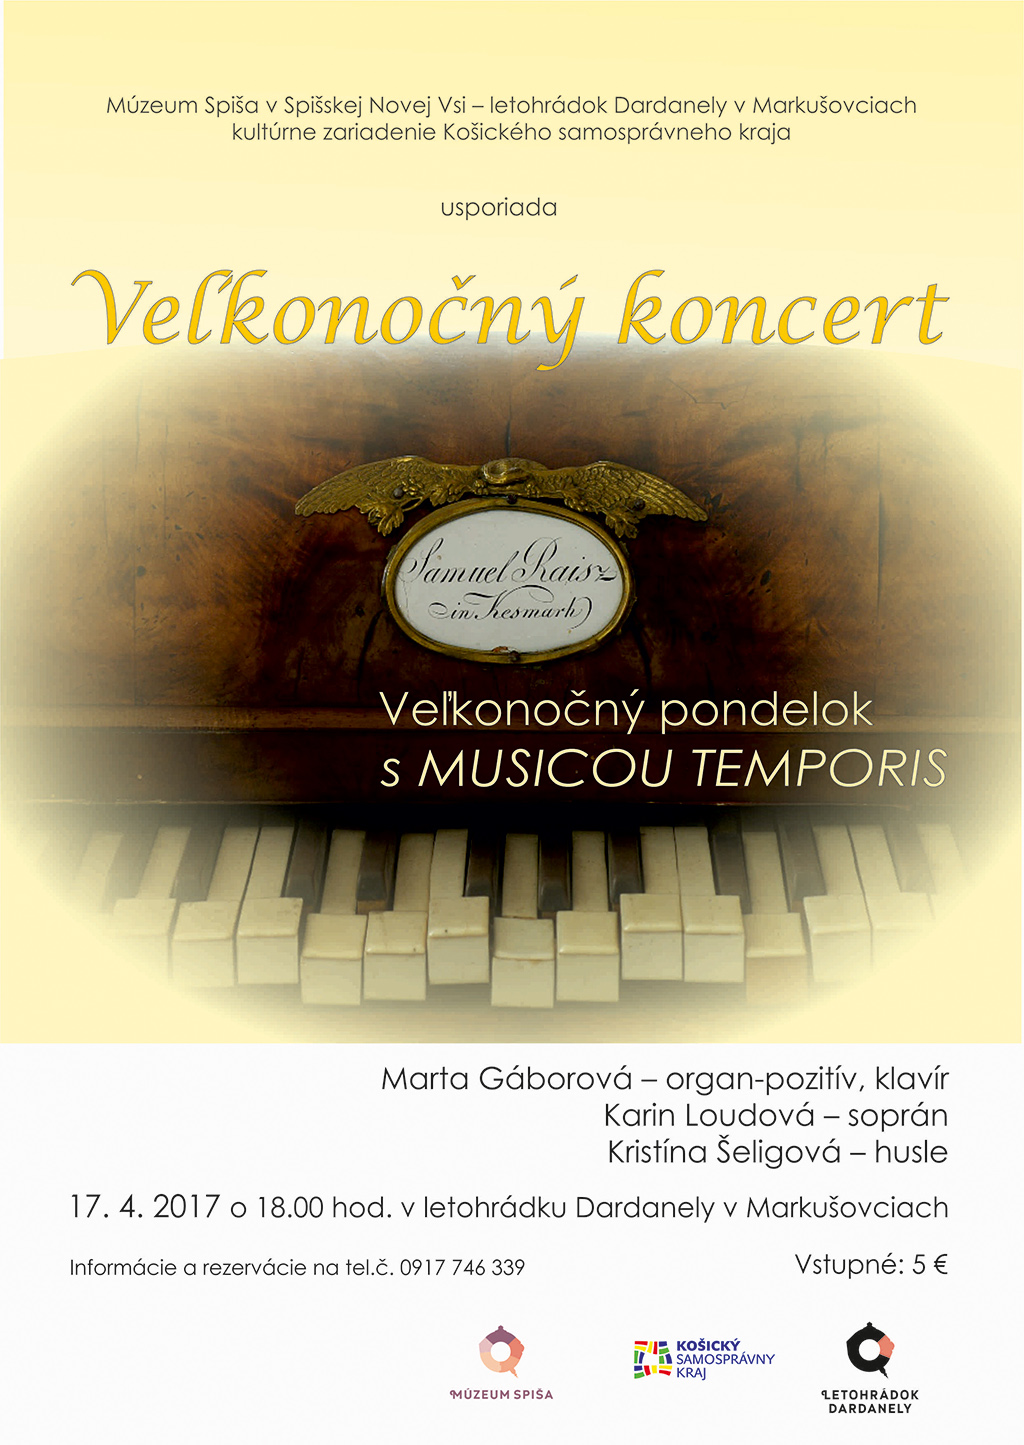 Vekonon koncert, ktor sa uskuton v Markuovciach - letohrdku Dardanely